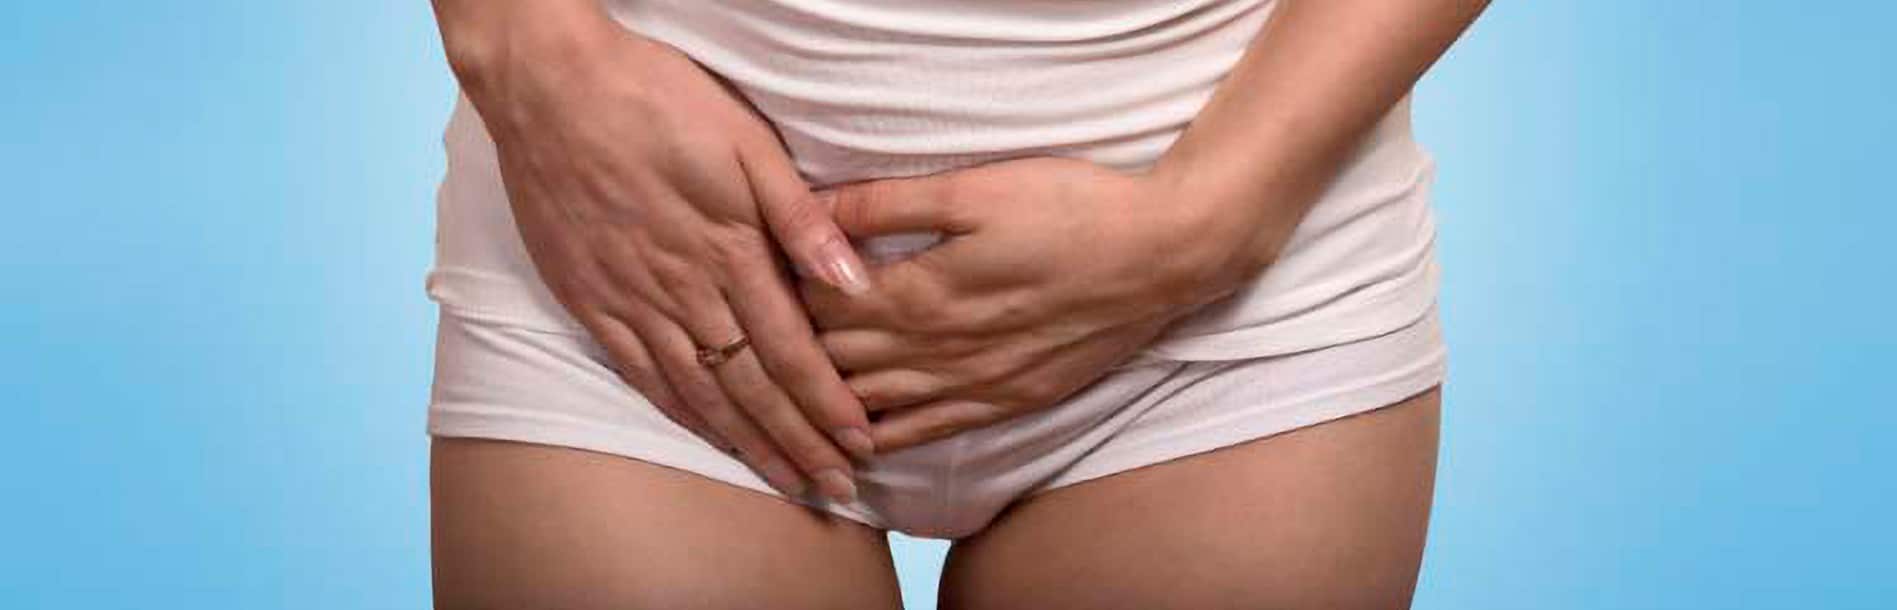 Cistos no ovário: uma grande dúvida das mulheres